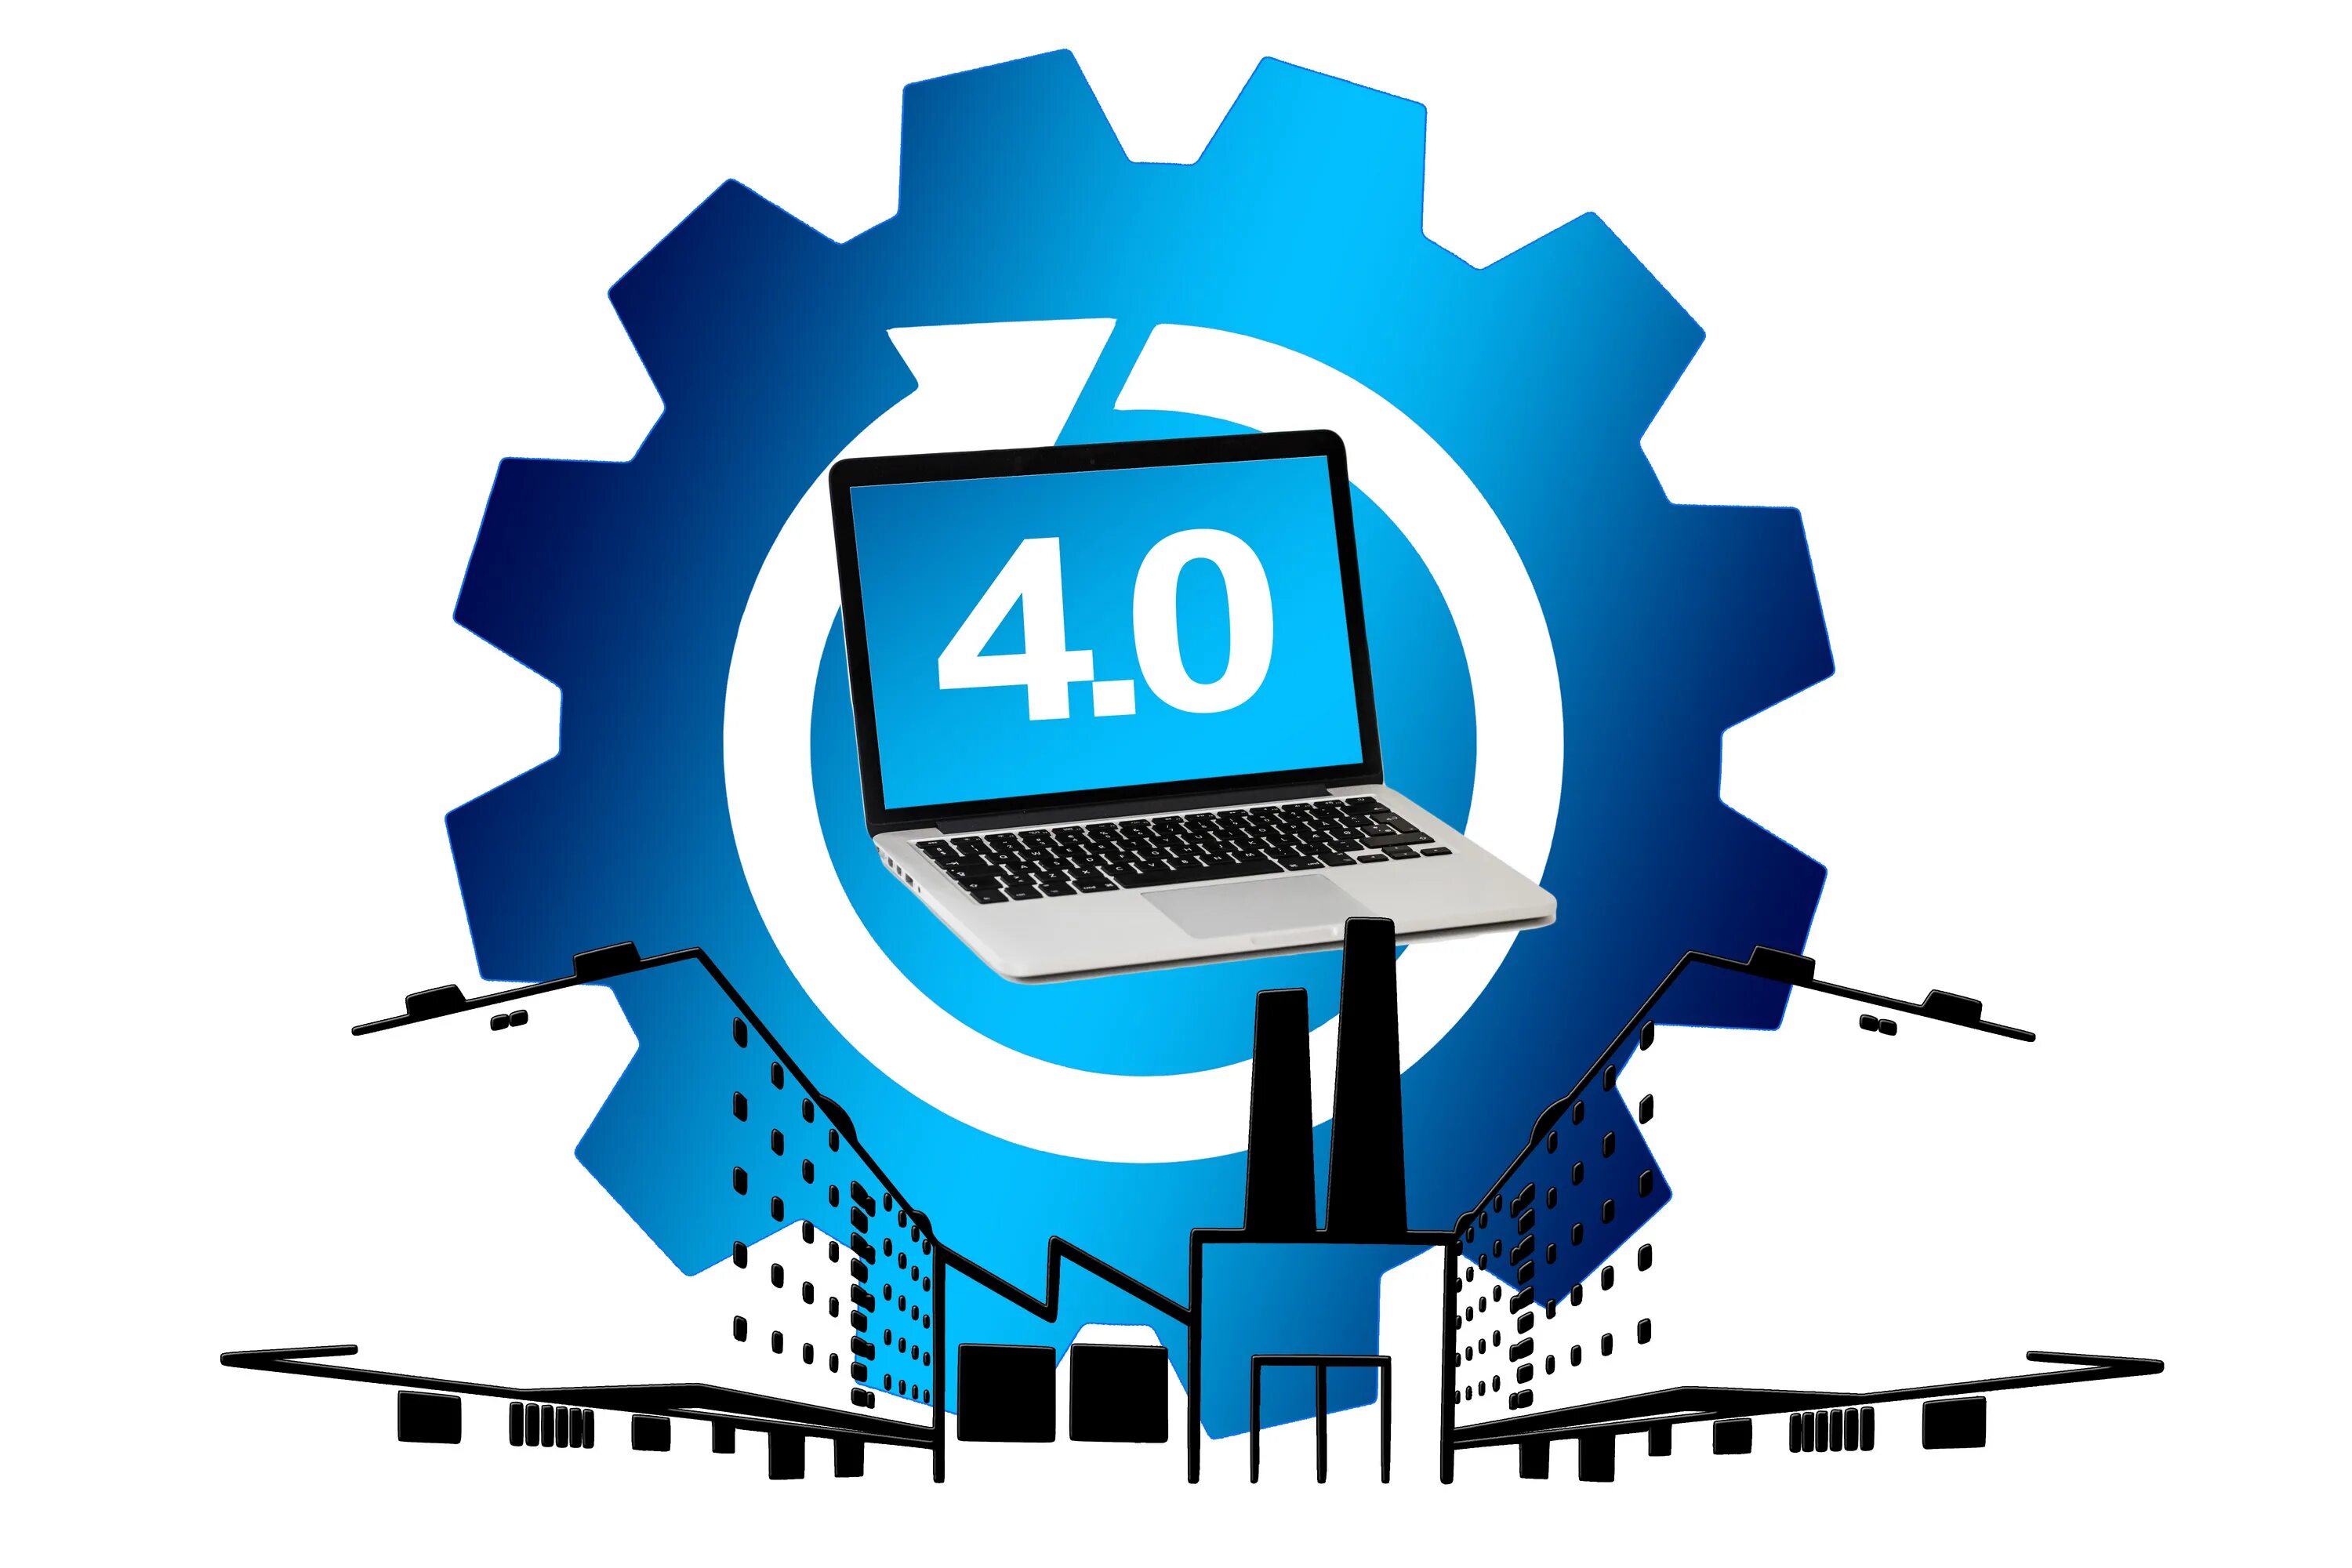 Экономика 4 0. Индустрия 4.0. Цифровые технологии. Промышленность 4.0. Революция 4.0. Цифровизация промышленности индустрия 4.0.